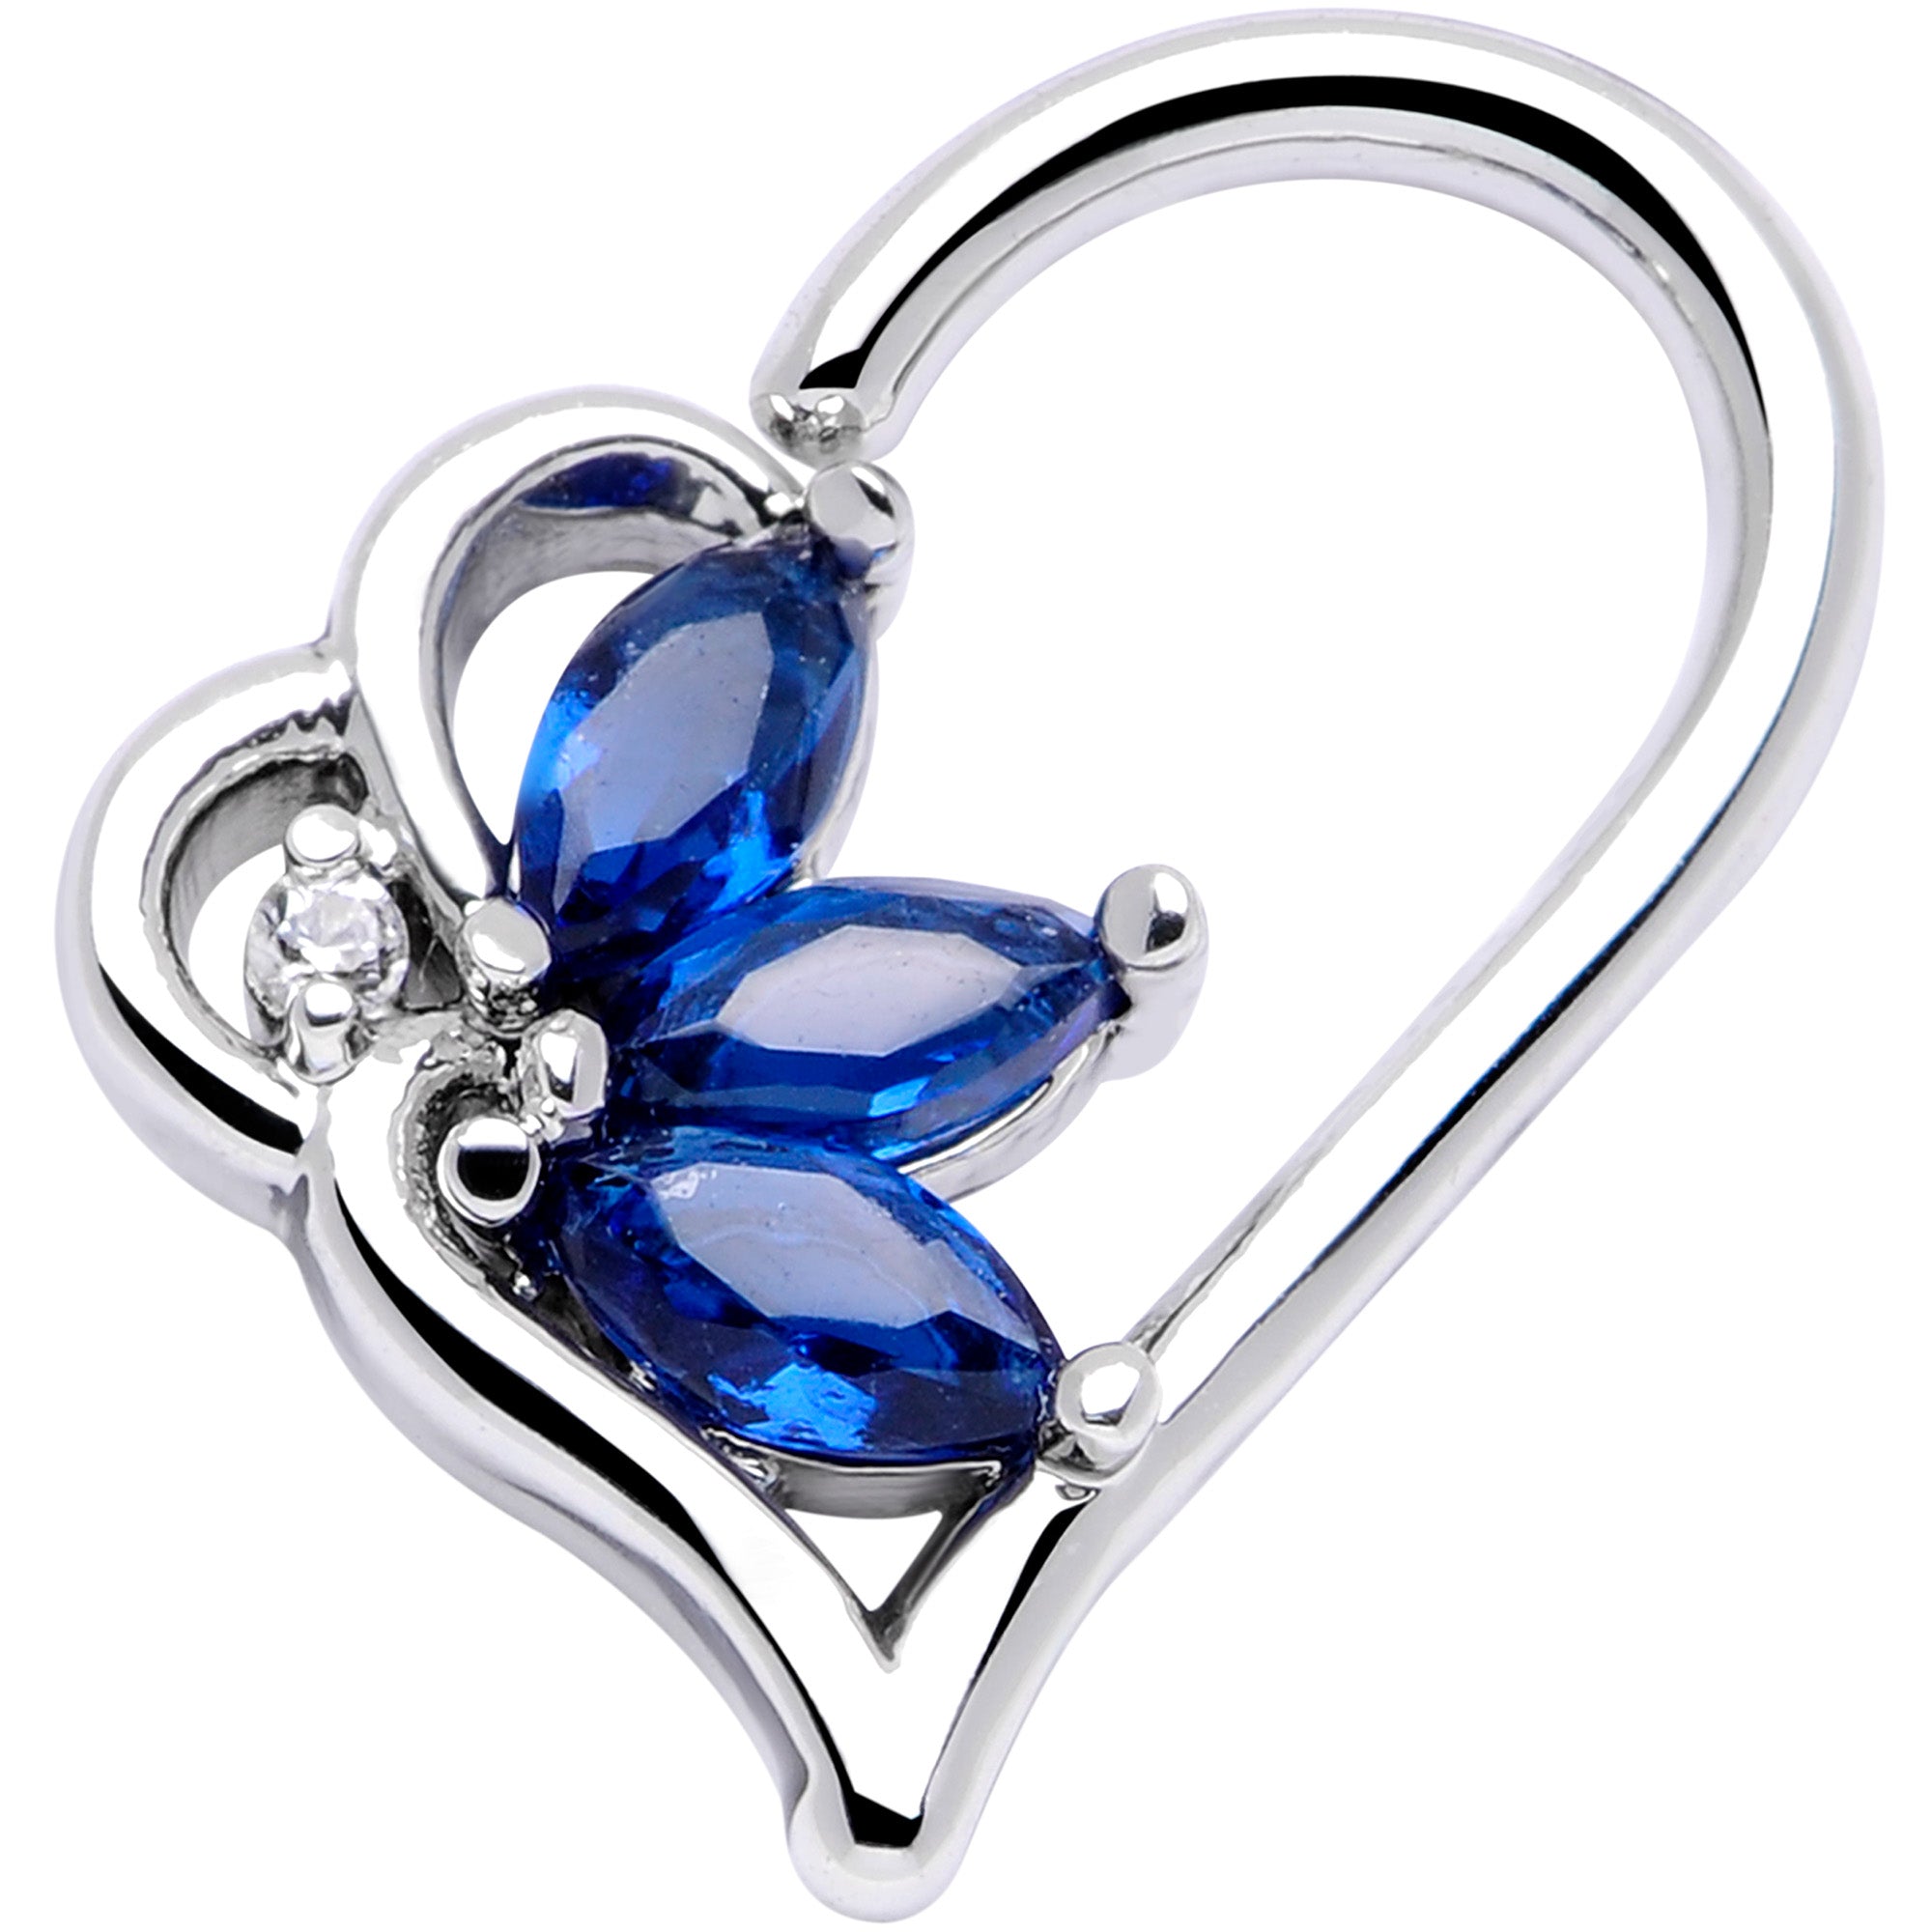 16 Gauge 3/8 Blue Gem Half Heart Right Ear Closure Ring